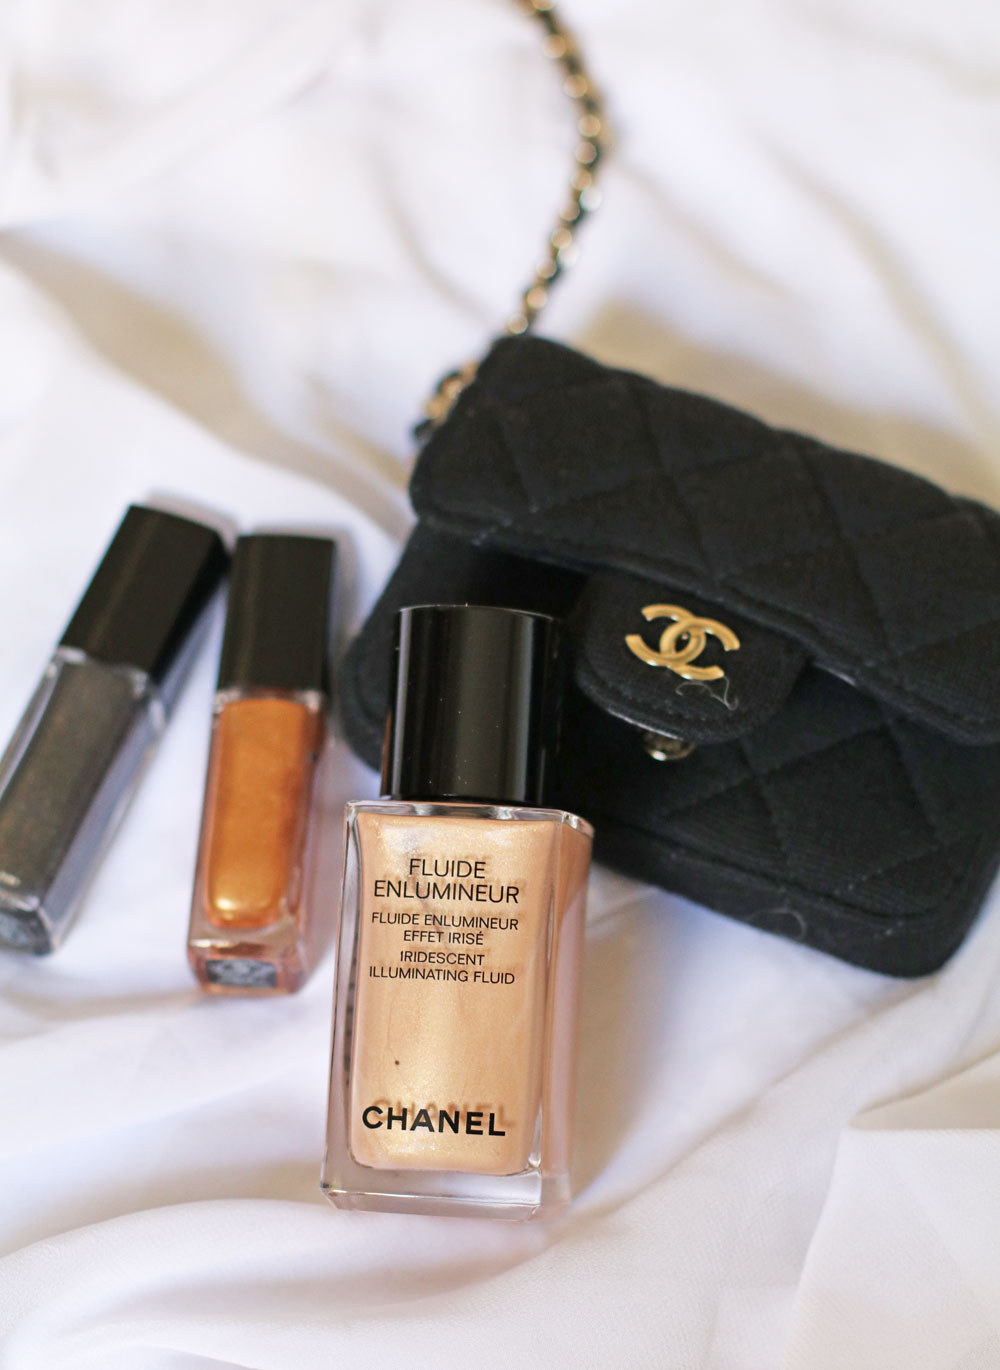 Zum Abschluss des Jubiläumsjahres von Chanel No 5 gibt es die limitierte Holiday Collection mit Makeup und duftenden Extras. 